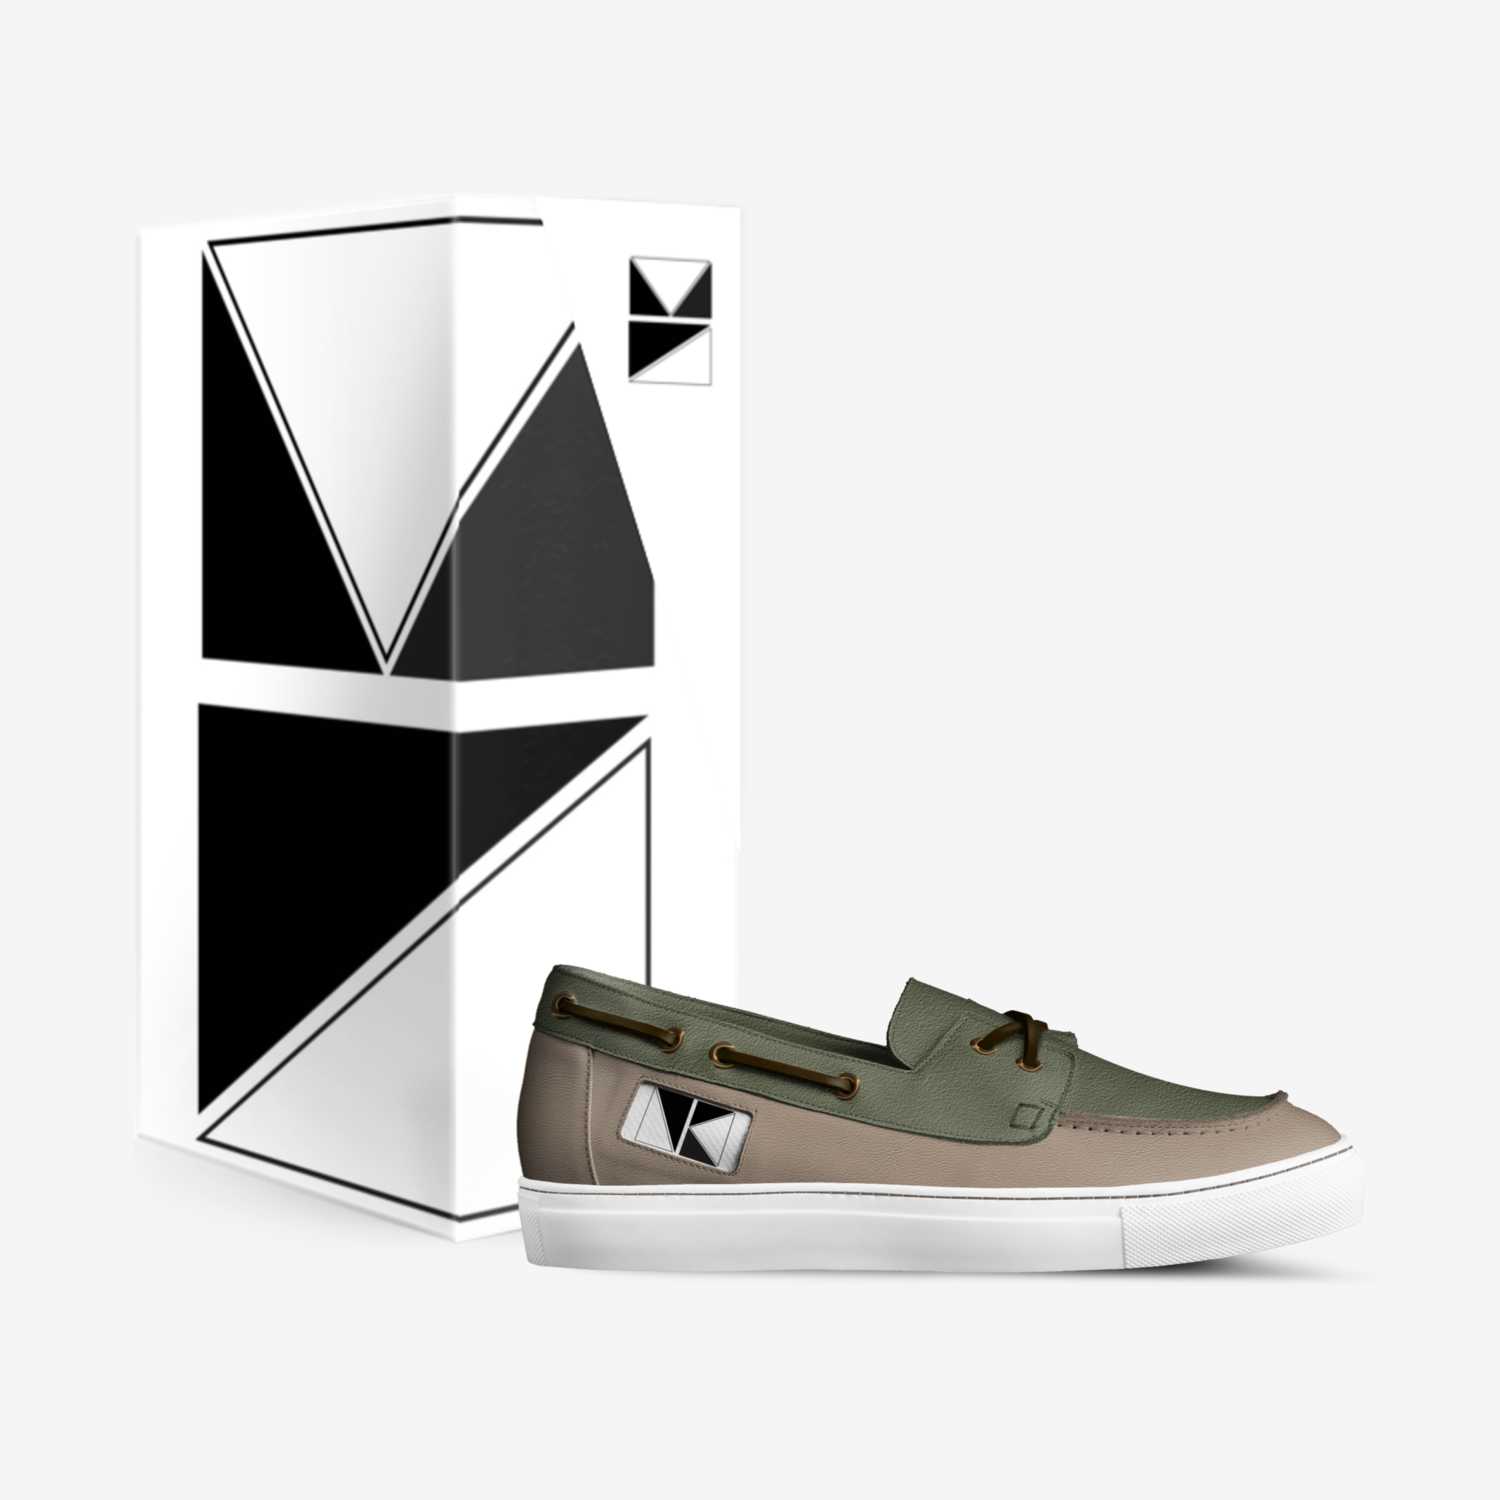 Kenzo Neukens custom made in Italy shoes by Kenzo Neukens | Box view